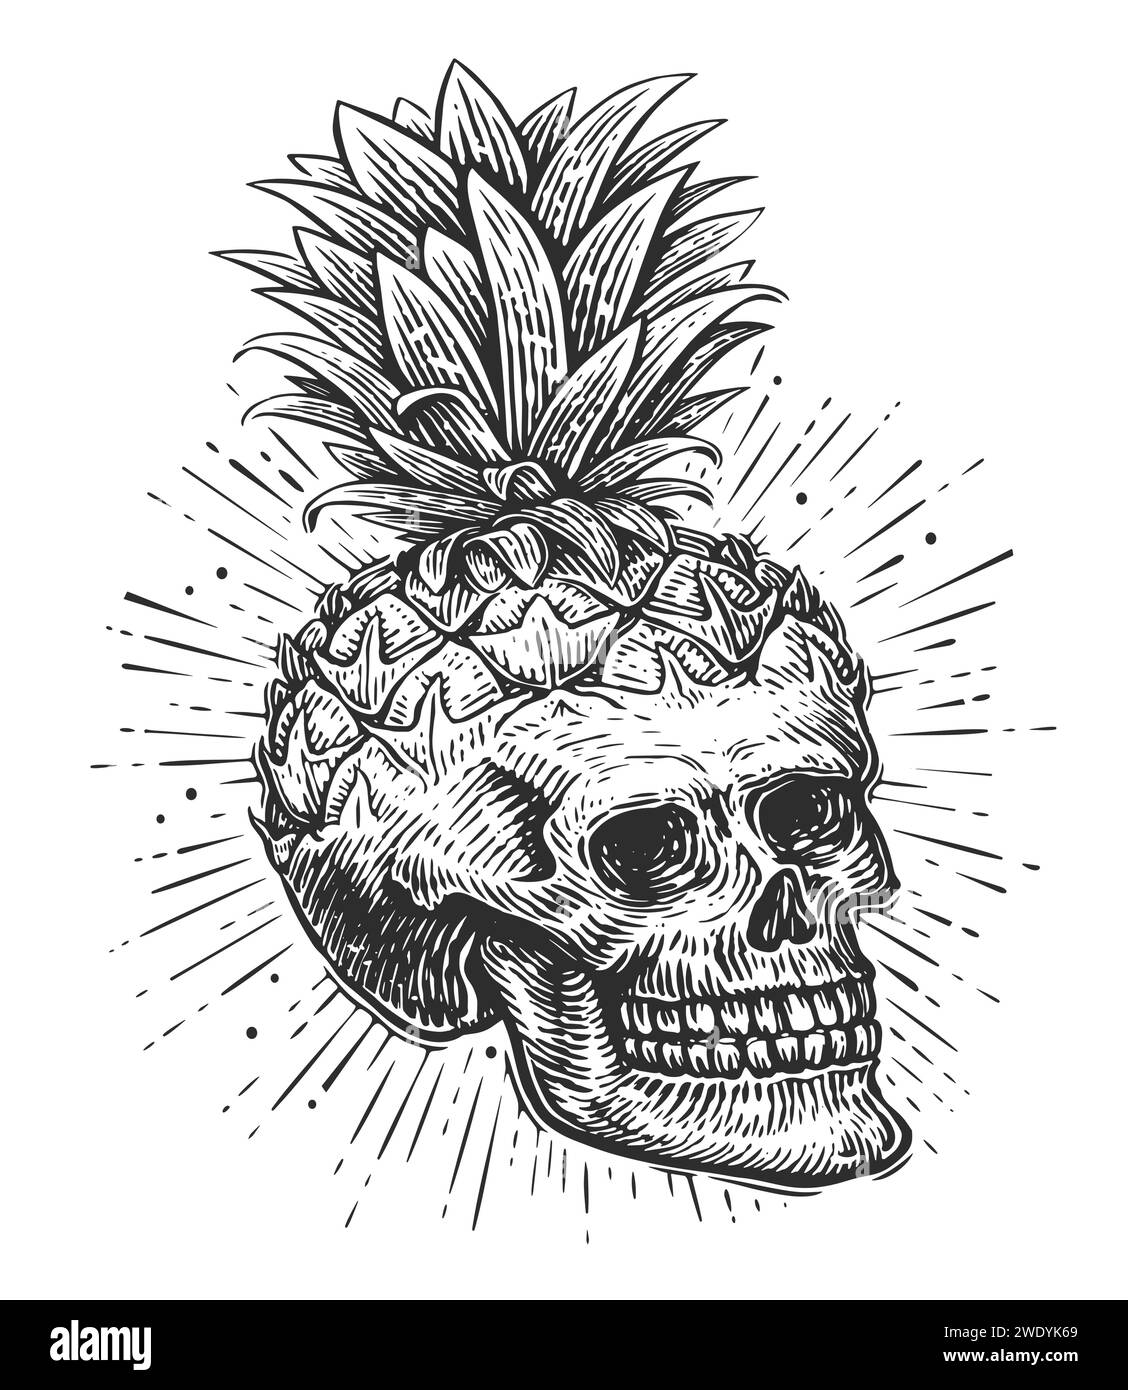 Incisione del cranio umano. Ananas con testa scheletrica. Disegno a mano illustrazione vettoriale vintage Illustrazione Vettoriale